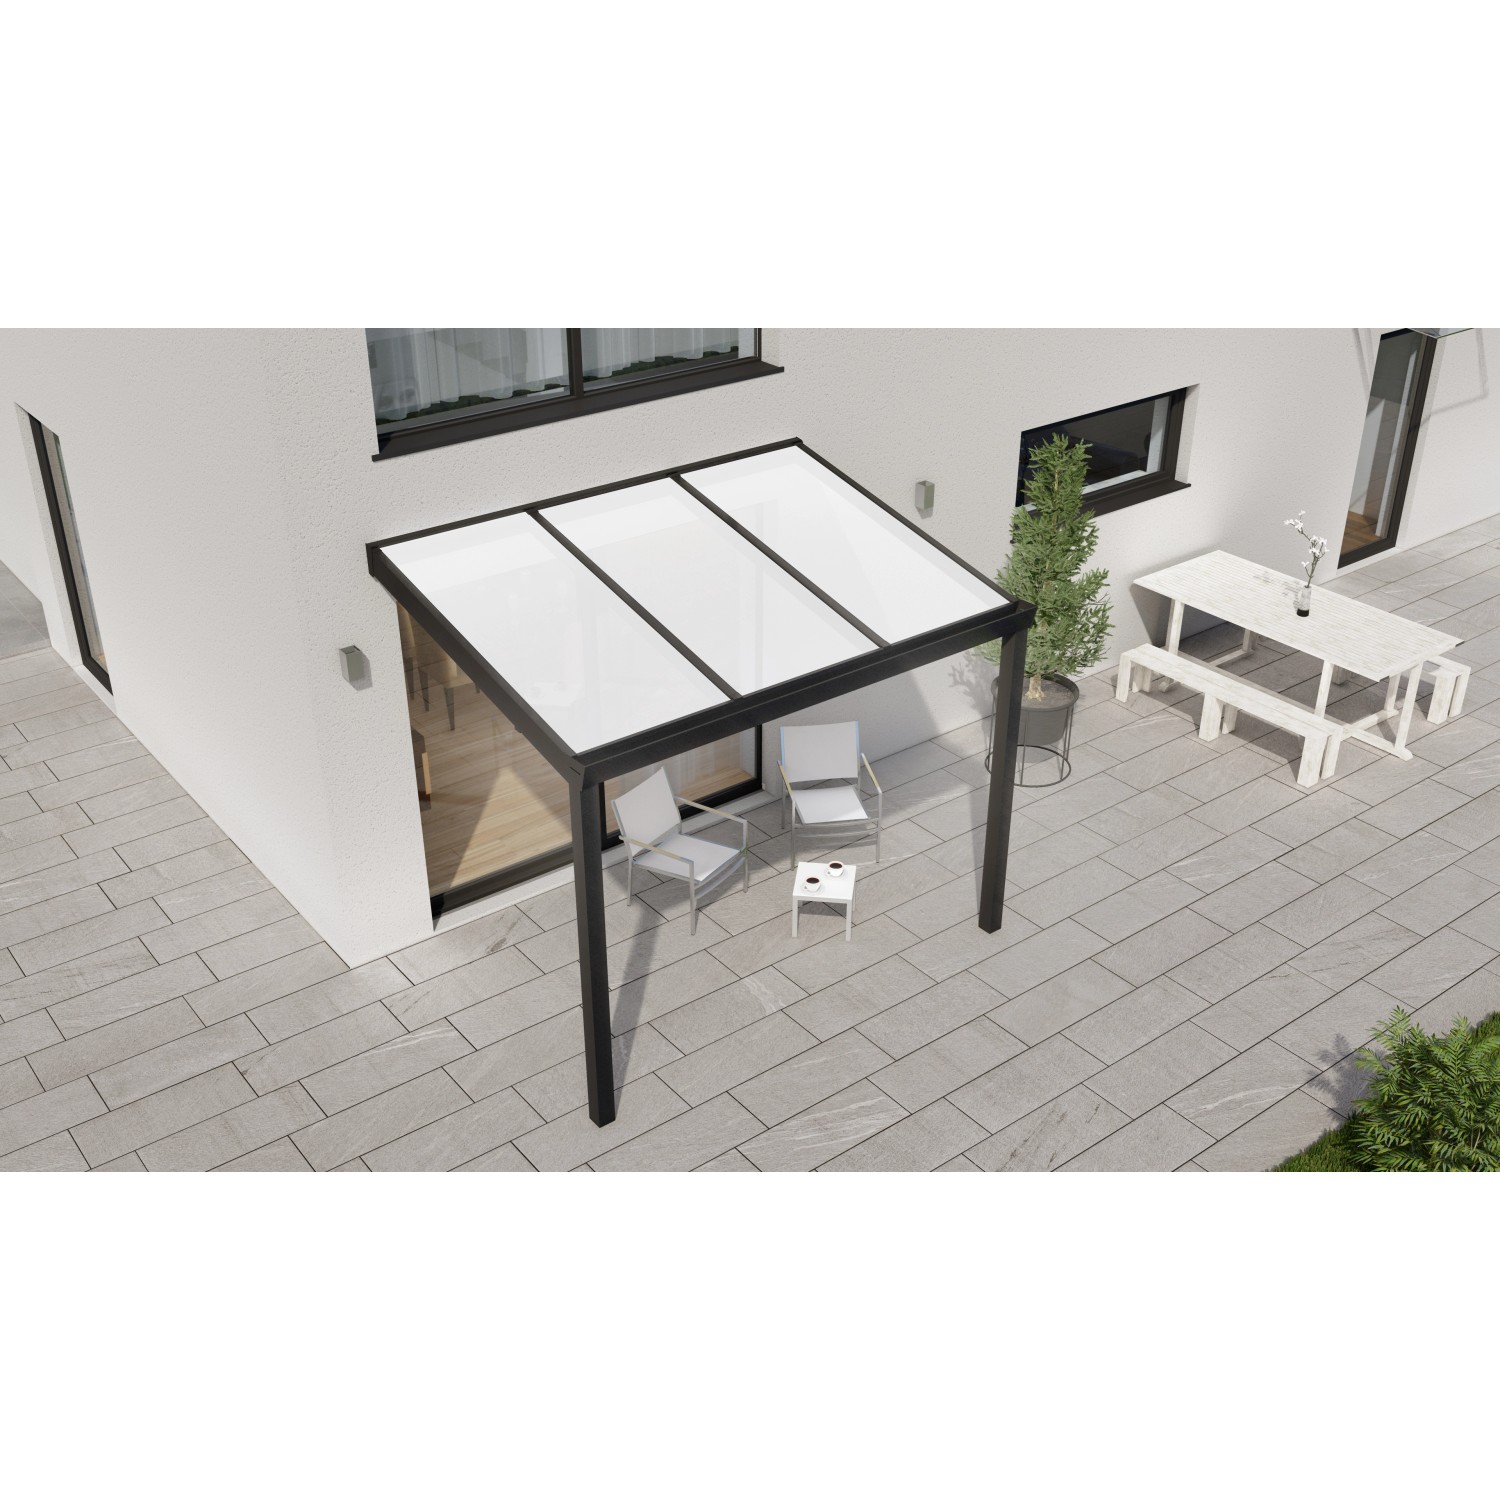 Terrassenüberdachung Professional 300 cm x 250 cm Schwarz Struktur PC Opal von GARDENDREAMS